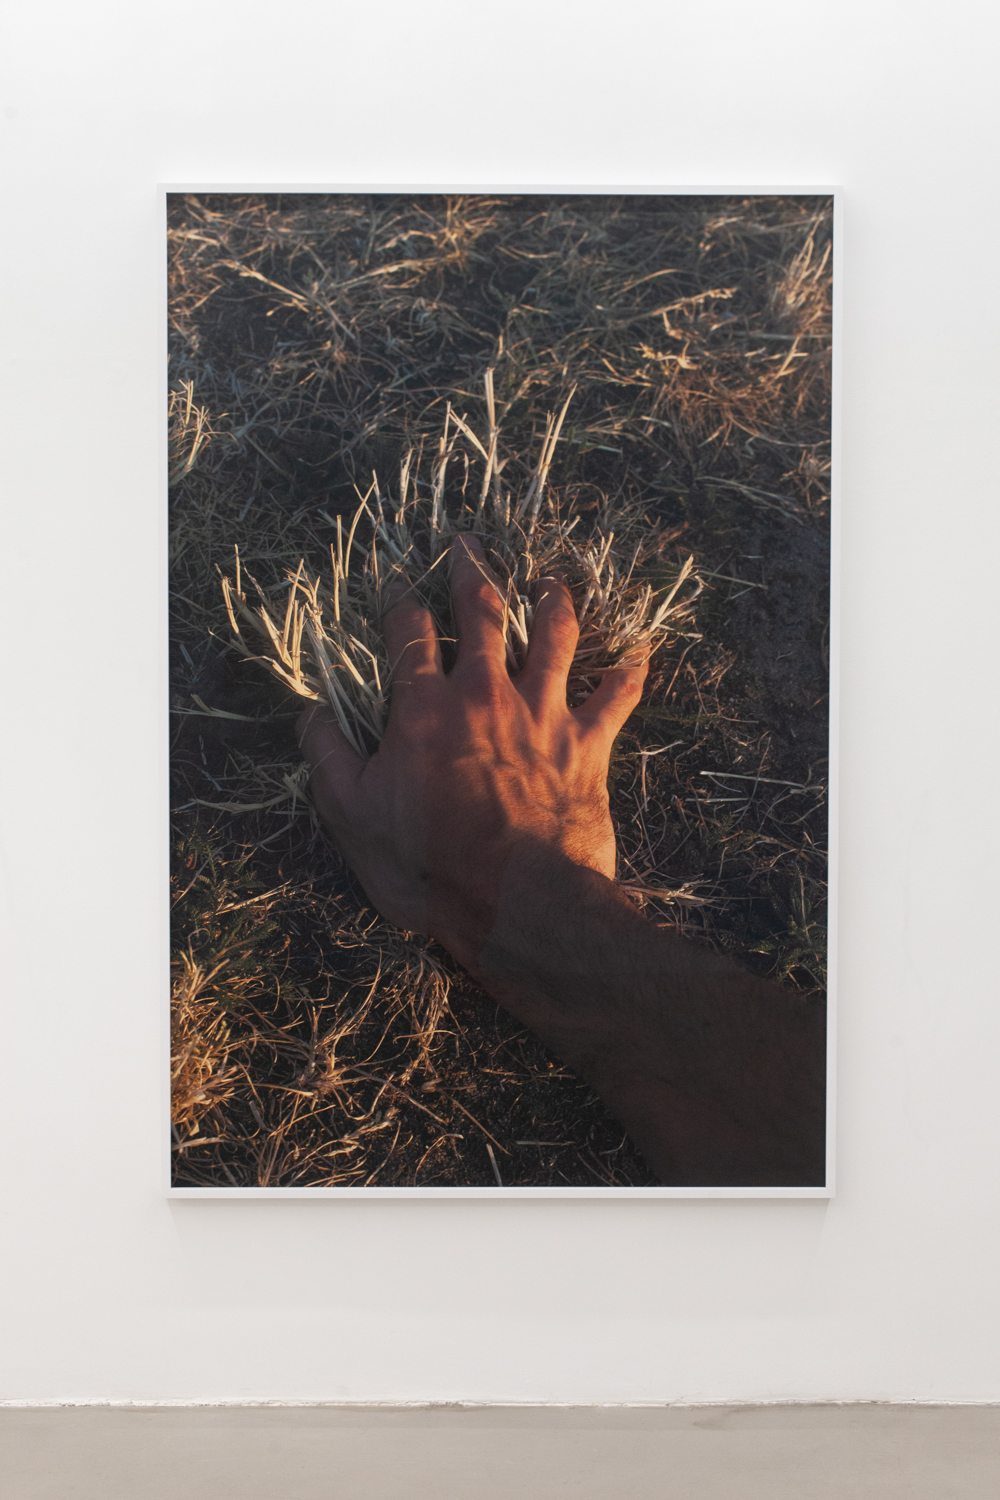 Paul Hutchinson, Hasenheide, sunset, 2018, Framed inkjet print, 195 x 130 cm, Edition of 1 + 1 AP